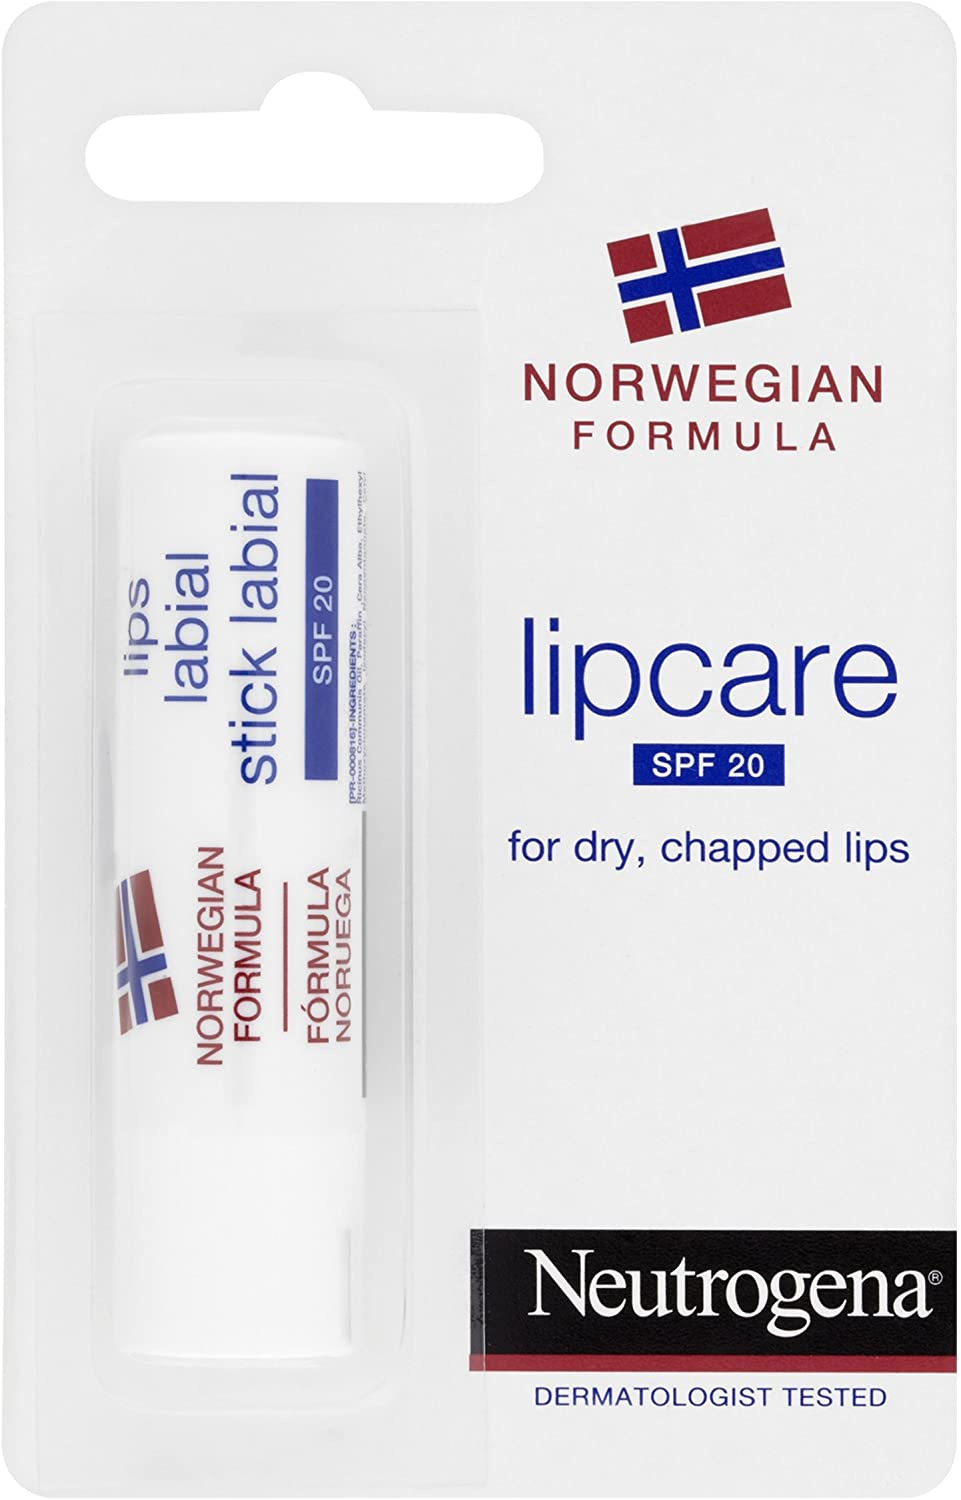 Neutrogena Norwegian Formula Norwegian Formula Lipcare Spf 20